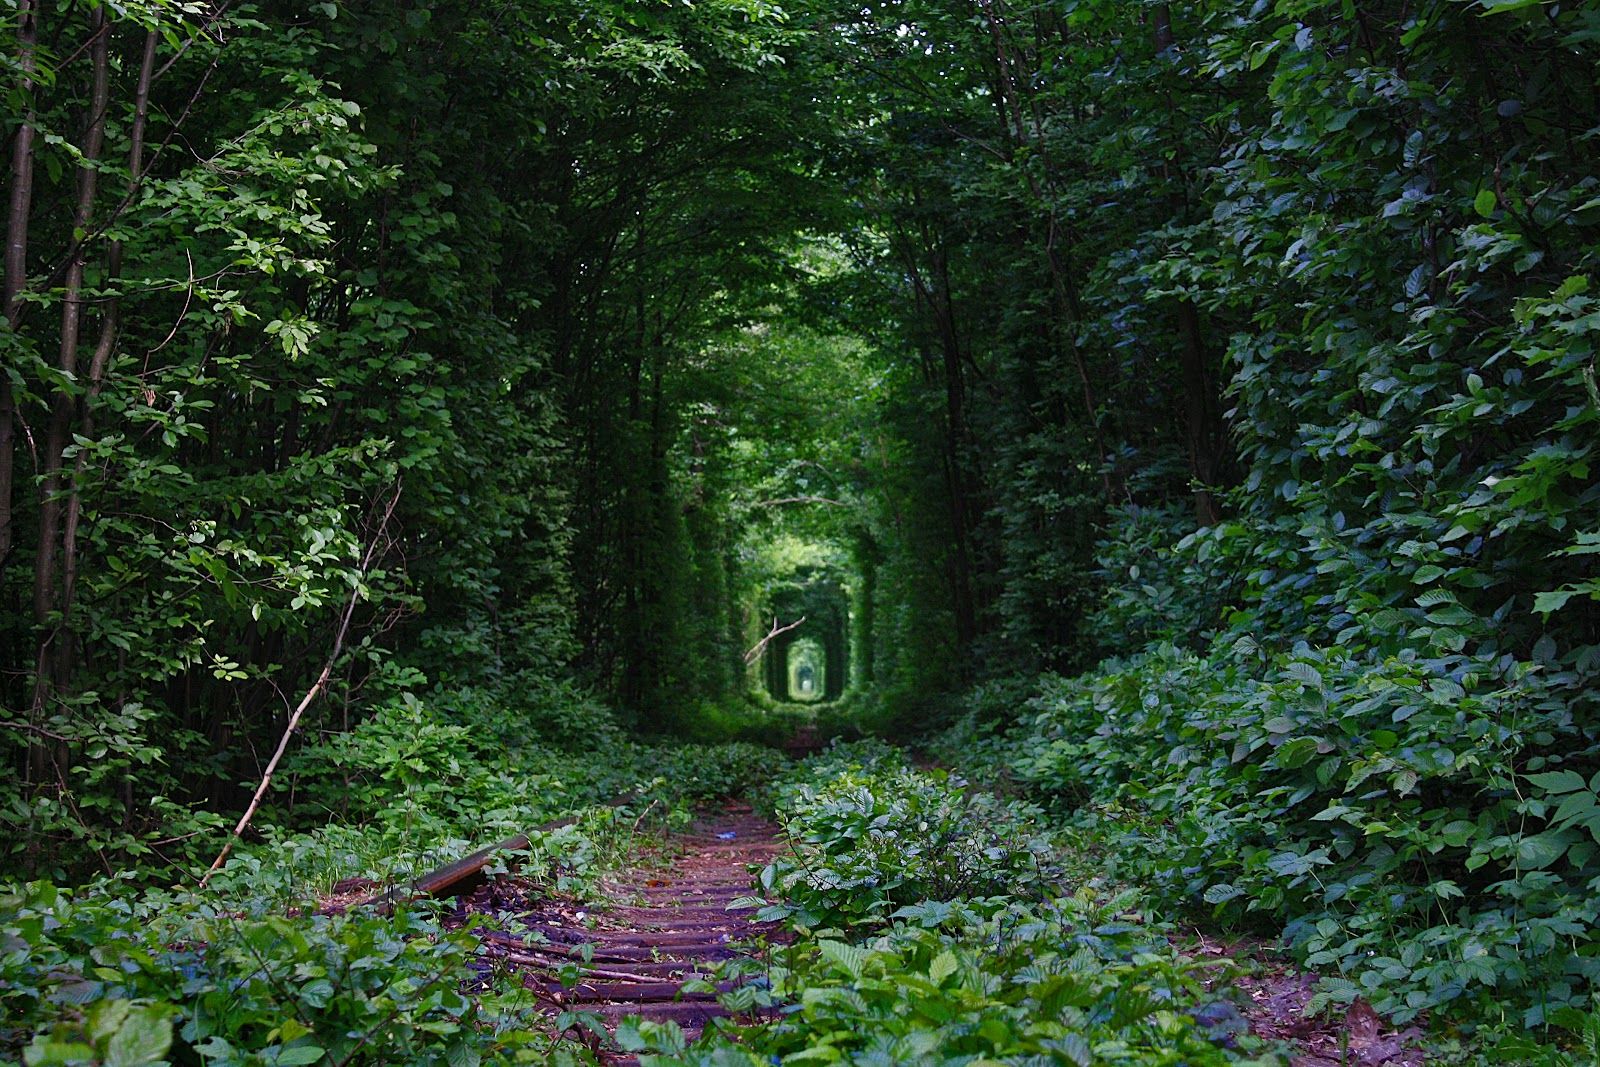 Fairy-Tale-Tunnel-of-Love-Found-in-Klevan-Ukraine-7